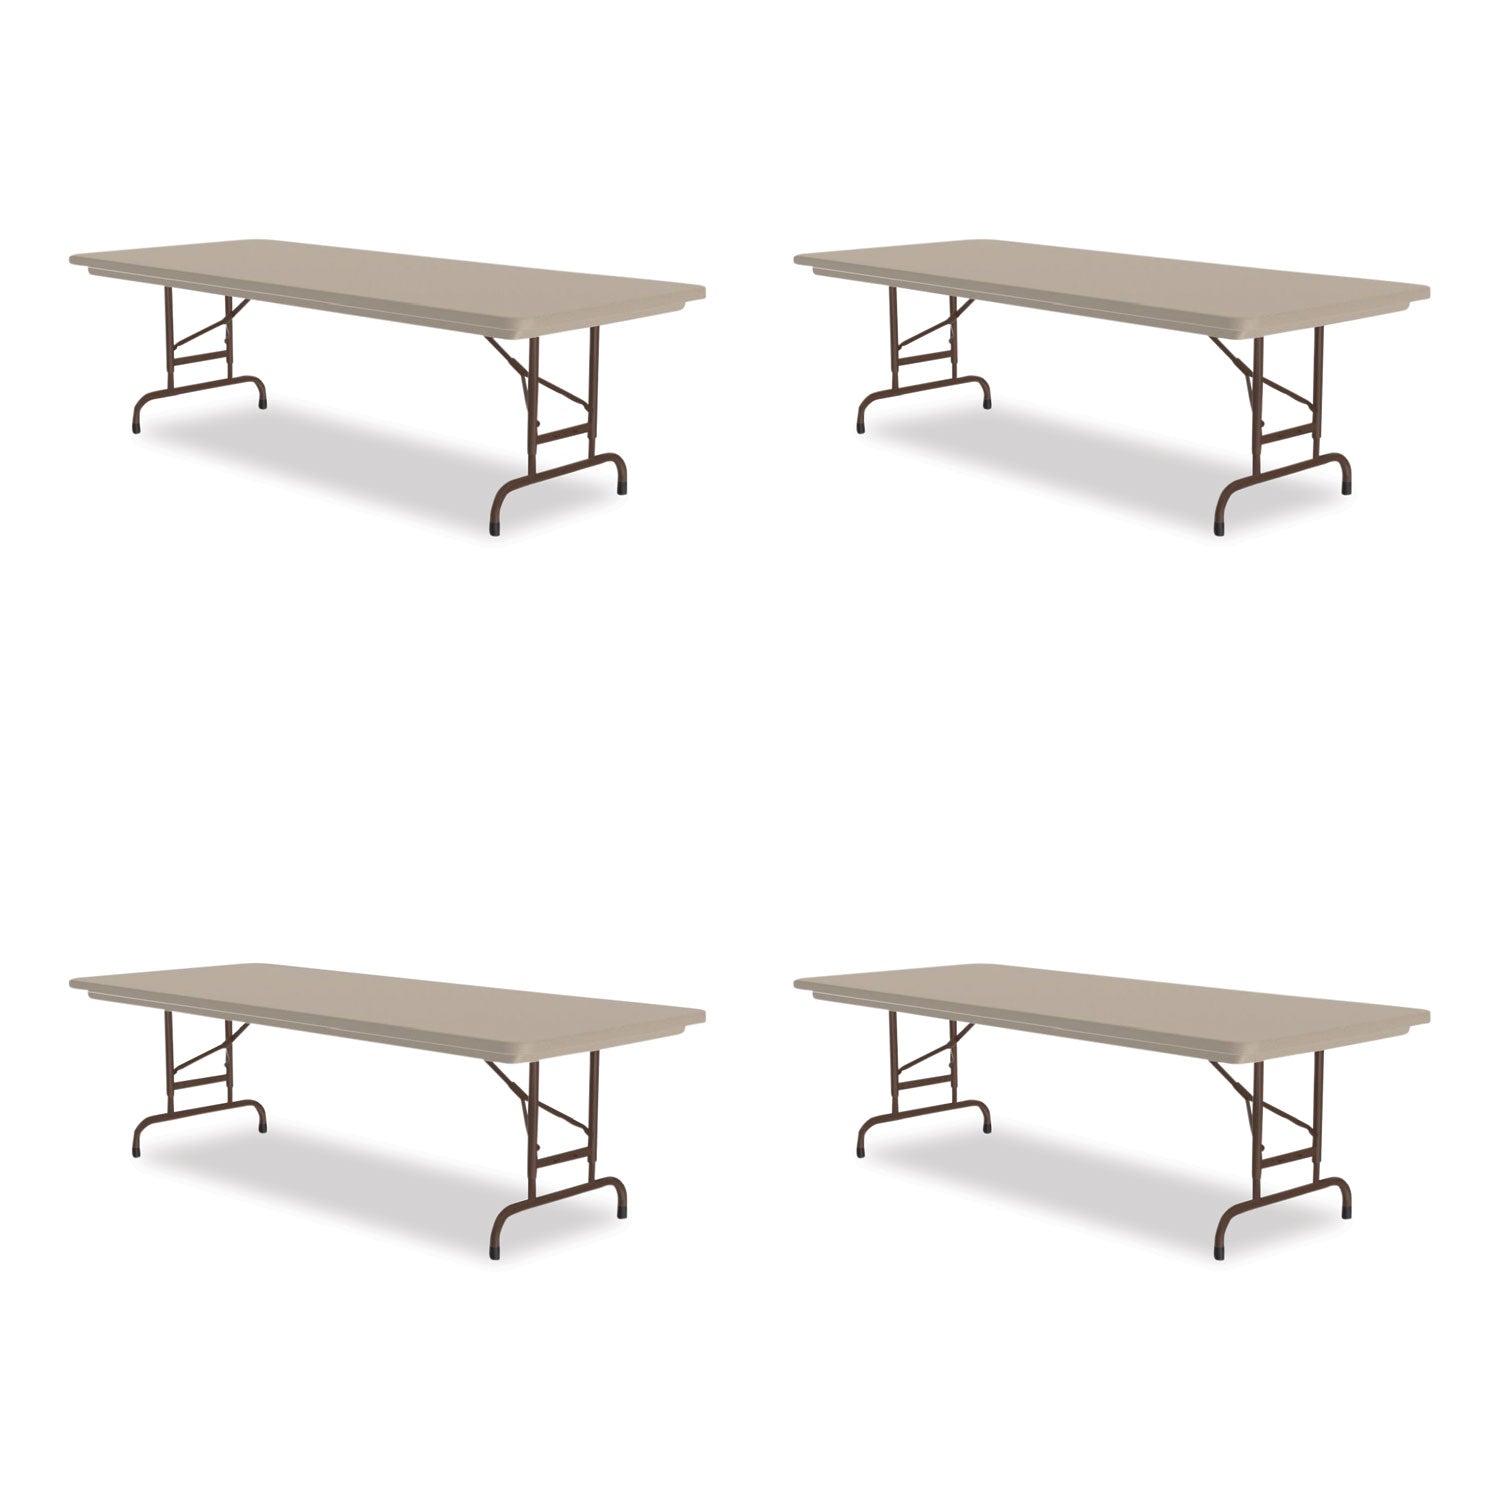 Adjustable Folding Tables, Rectangular, 72" x 30" x 22" to 32", Mocha Top, Brown Legs, 4/Pallet Flipcost Flipcost